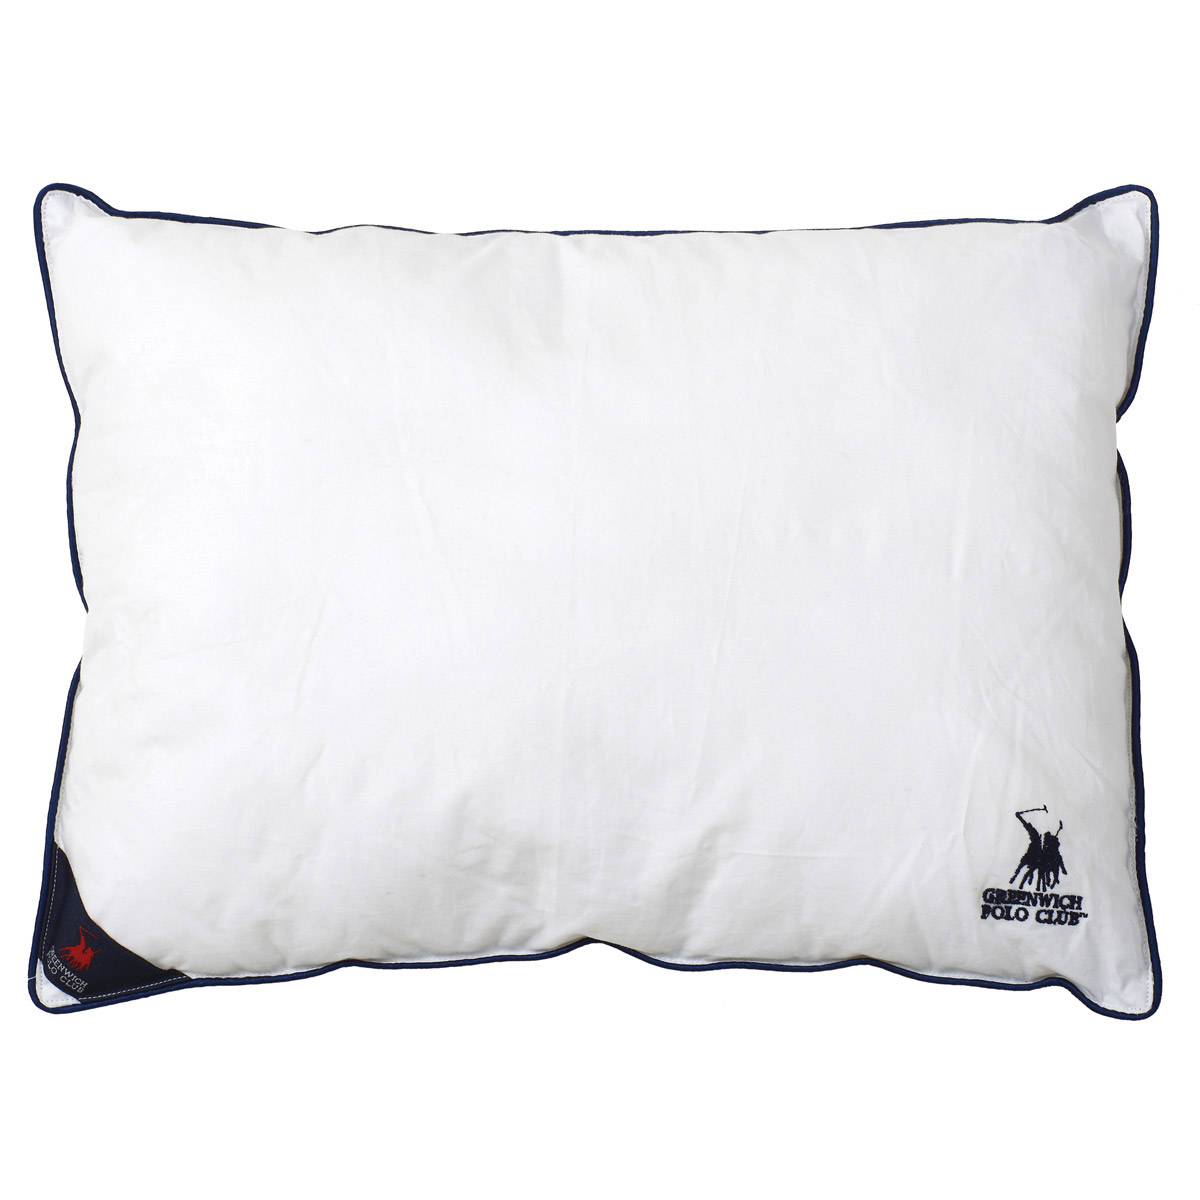 Μαξιλάρι Πουπουλένιο Μαλακό (50×70) Greenwich Polo Club Pillows 2304